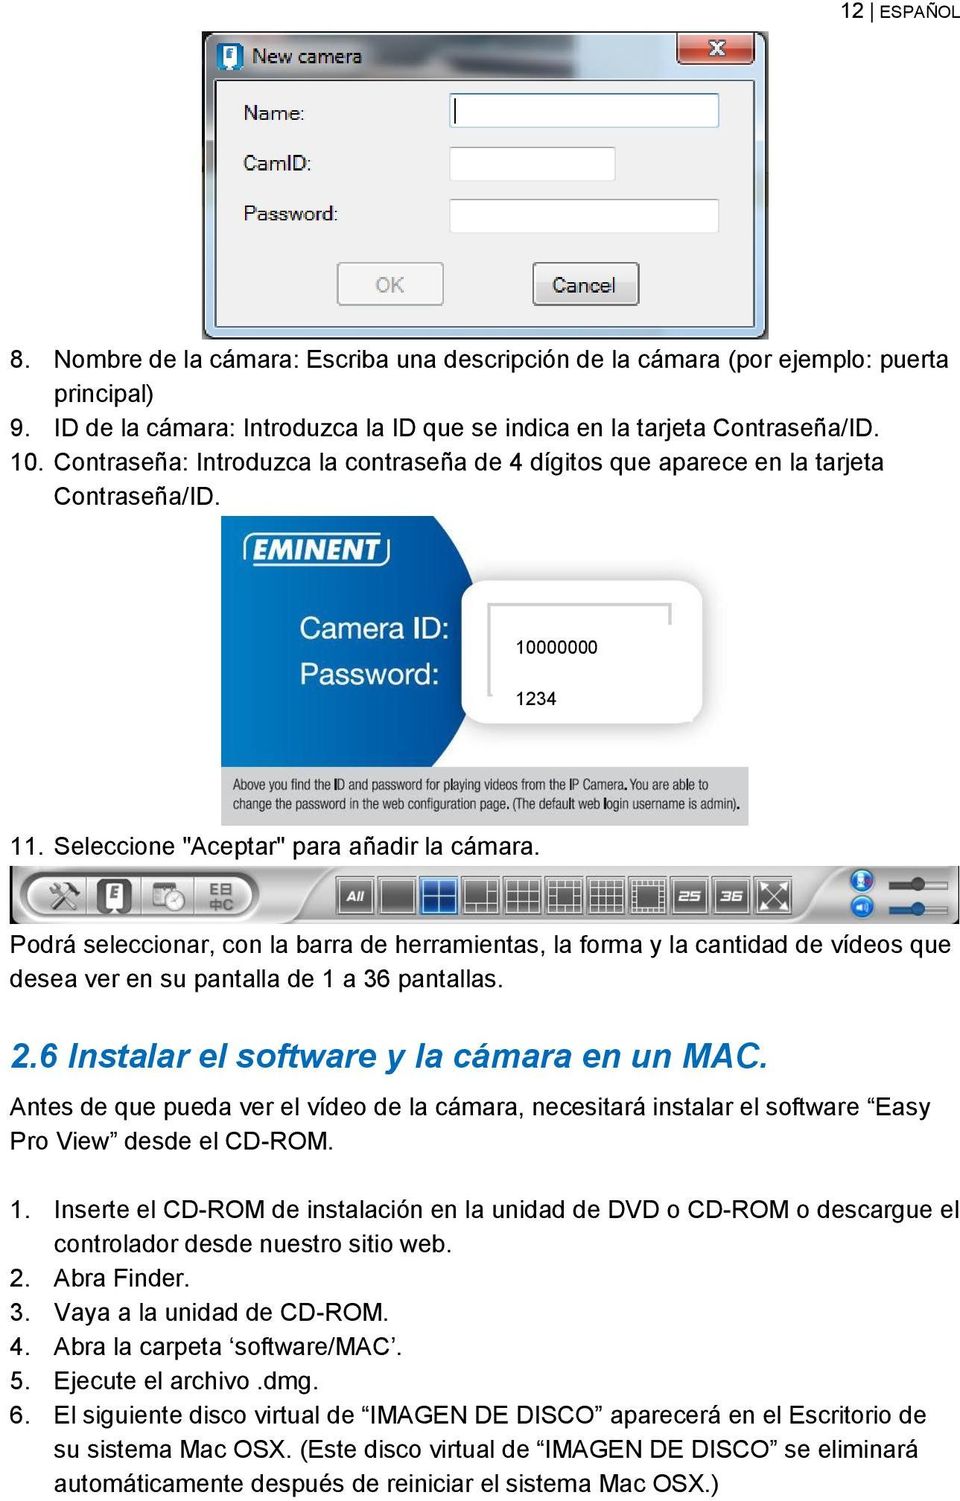 Podrá seleccionar, con la barra de herramientas, la forma y la cantidad de vídeos que desea ver en su pantalla de 1 a 36 pantallas. 2.6 Instalar el software y la cámara en un MAC.